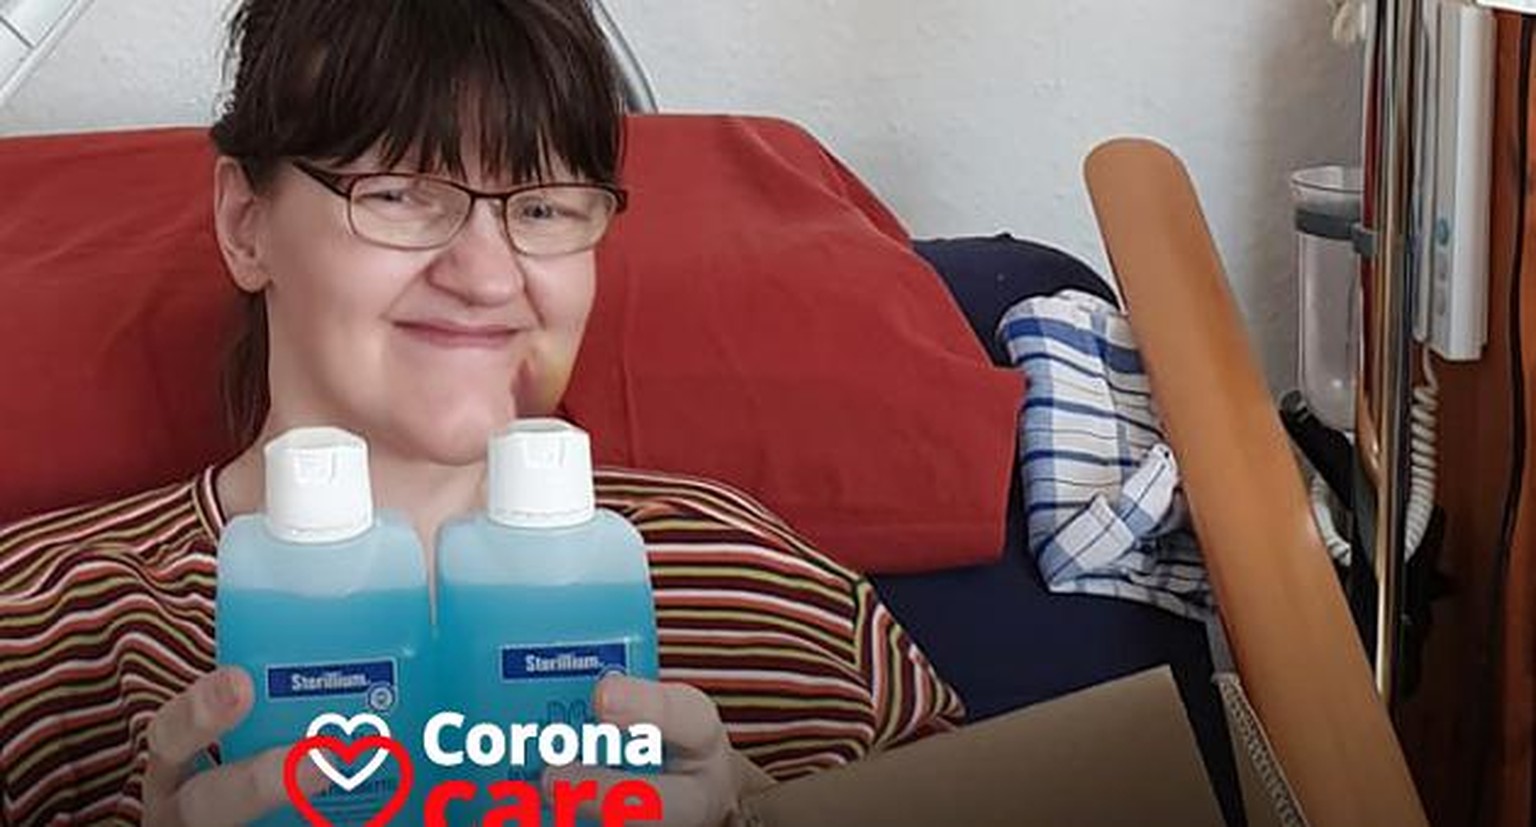 Gorth ist schwer Krank, aber dank #CoronaCare hat sie nun spezielles Desinfektionsmittel bekommen.